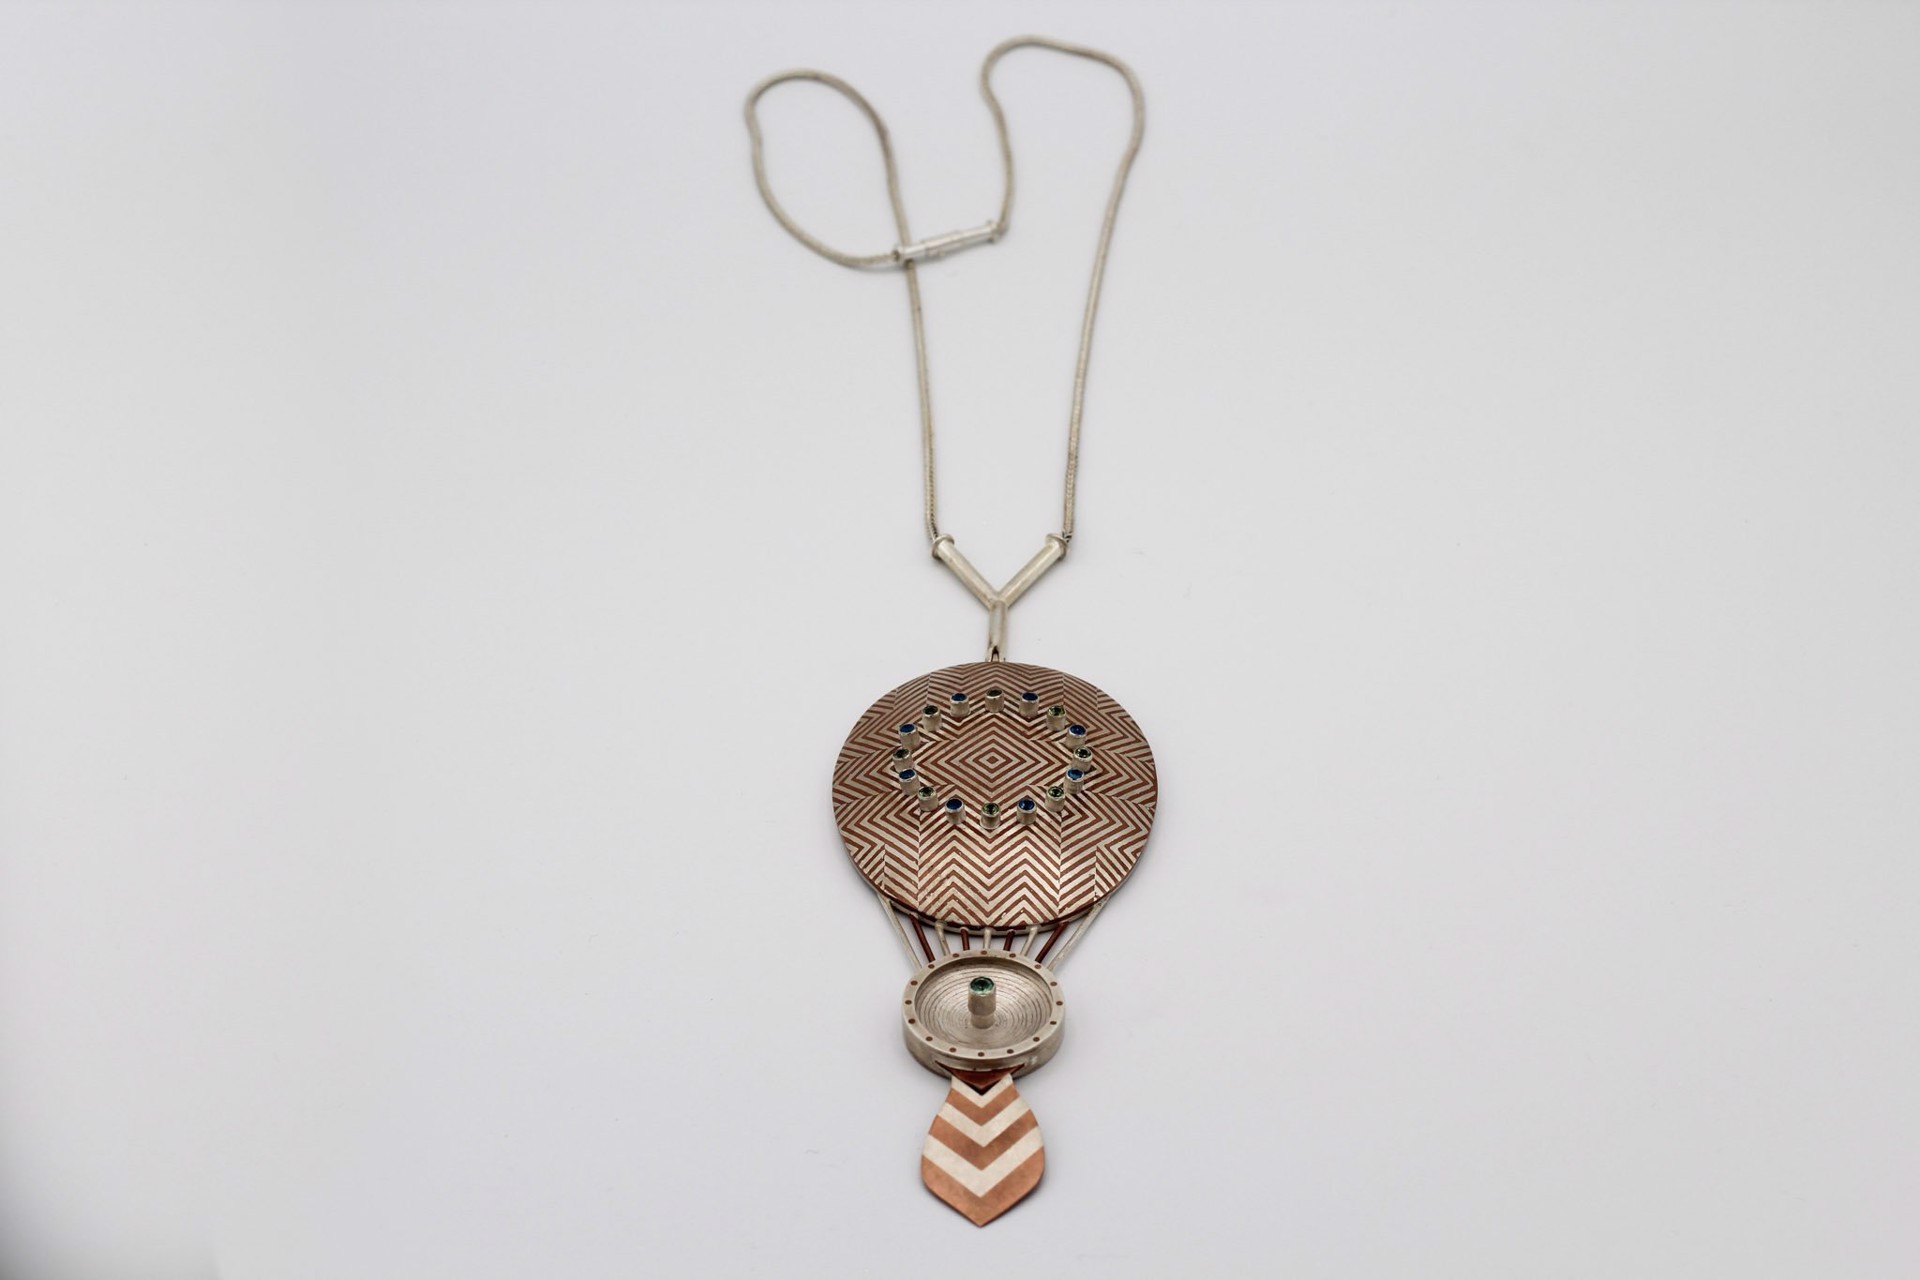 Necklace by Lisa Gralnick